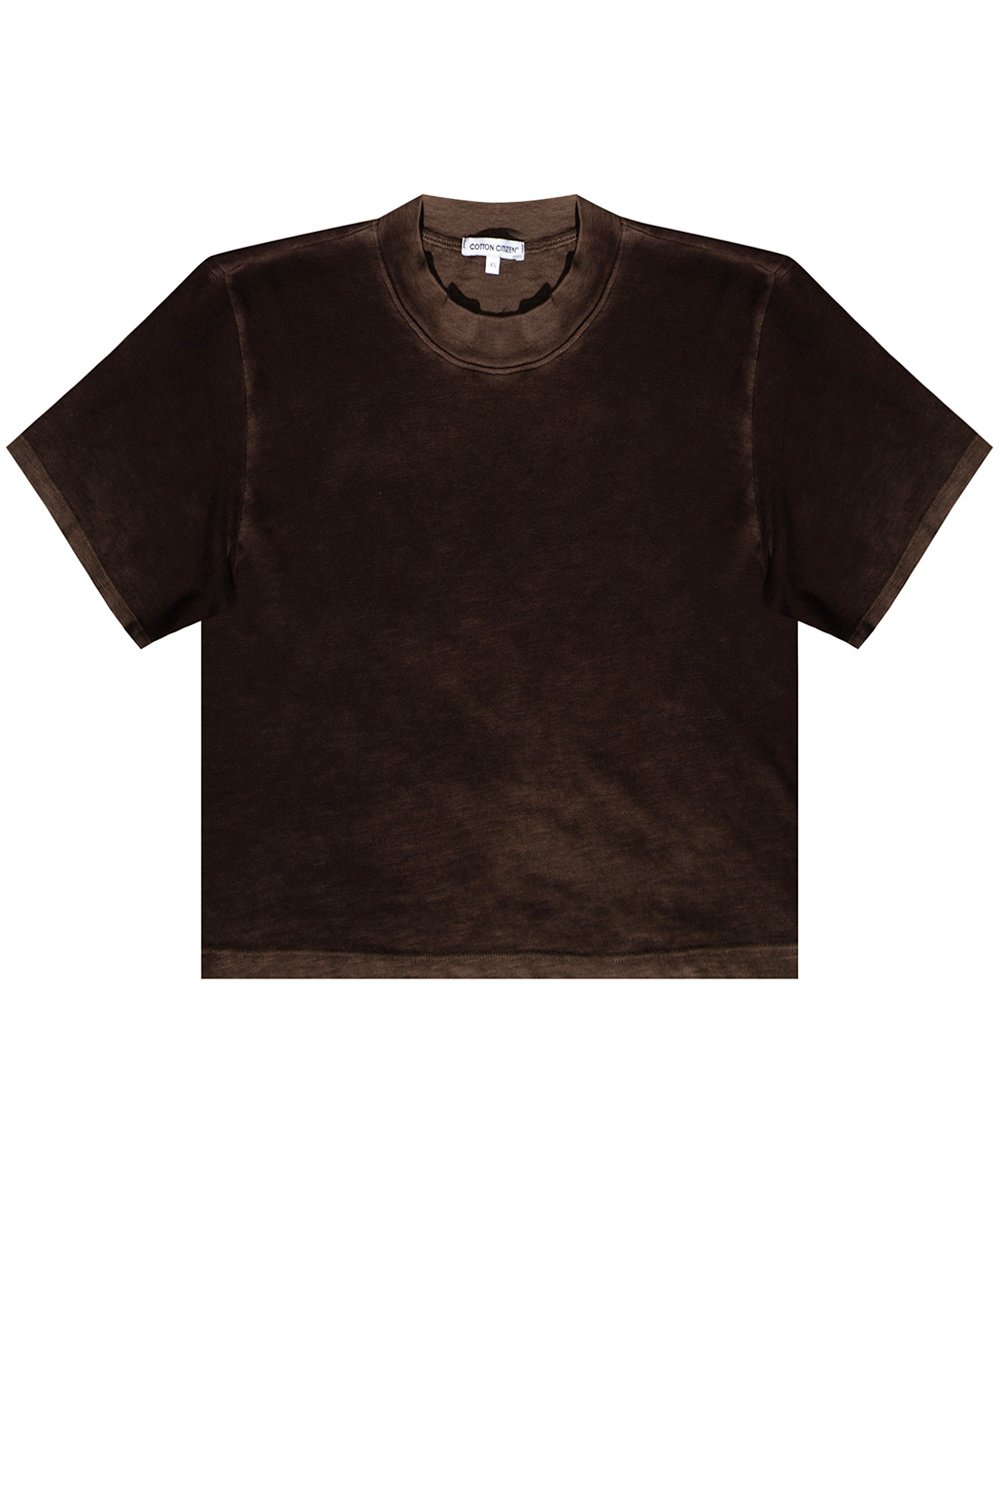 Cotton Citizen Worn-effect T-shirt